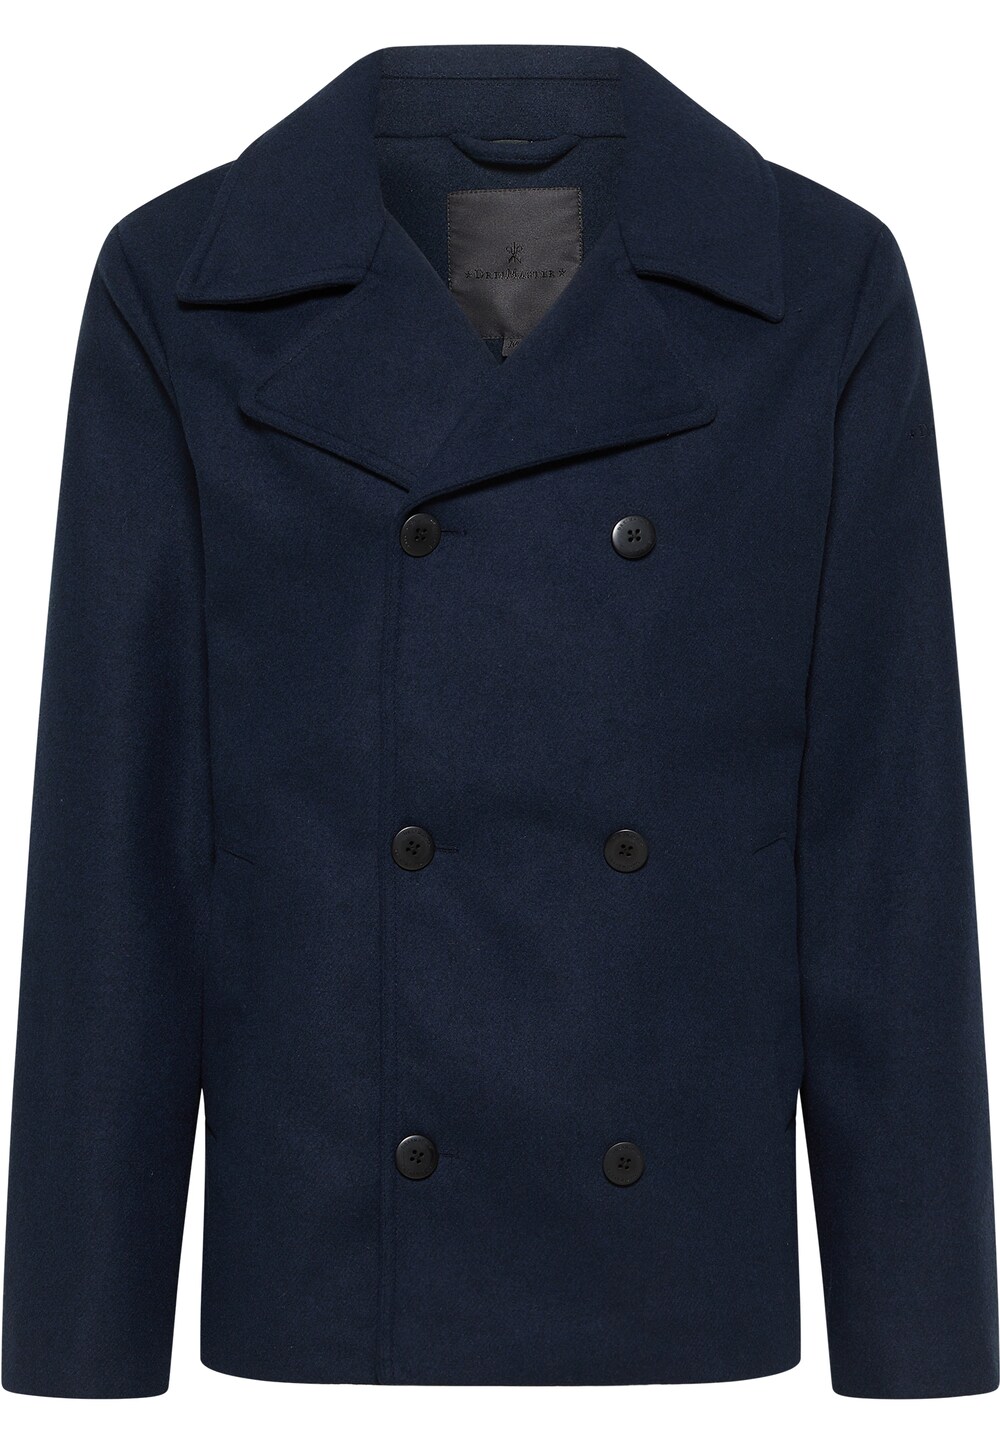 Межсезонное пальто DreiMaster Klassik, ночной синий межсезонная куртка dreimaster ночной синий